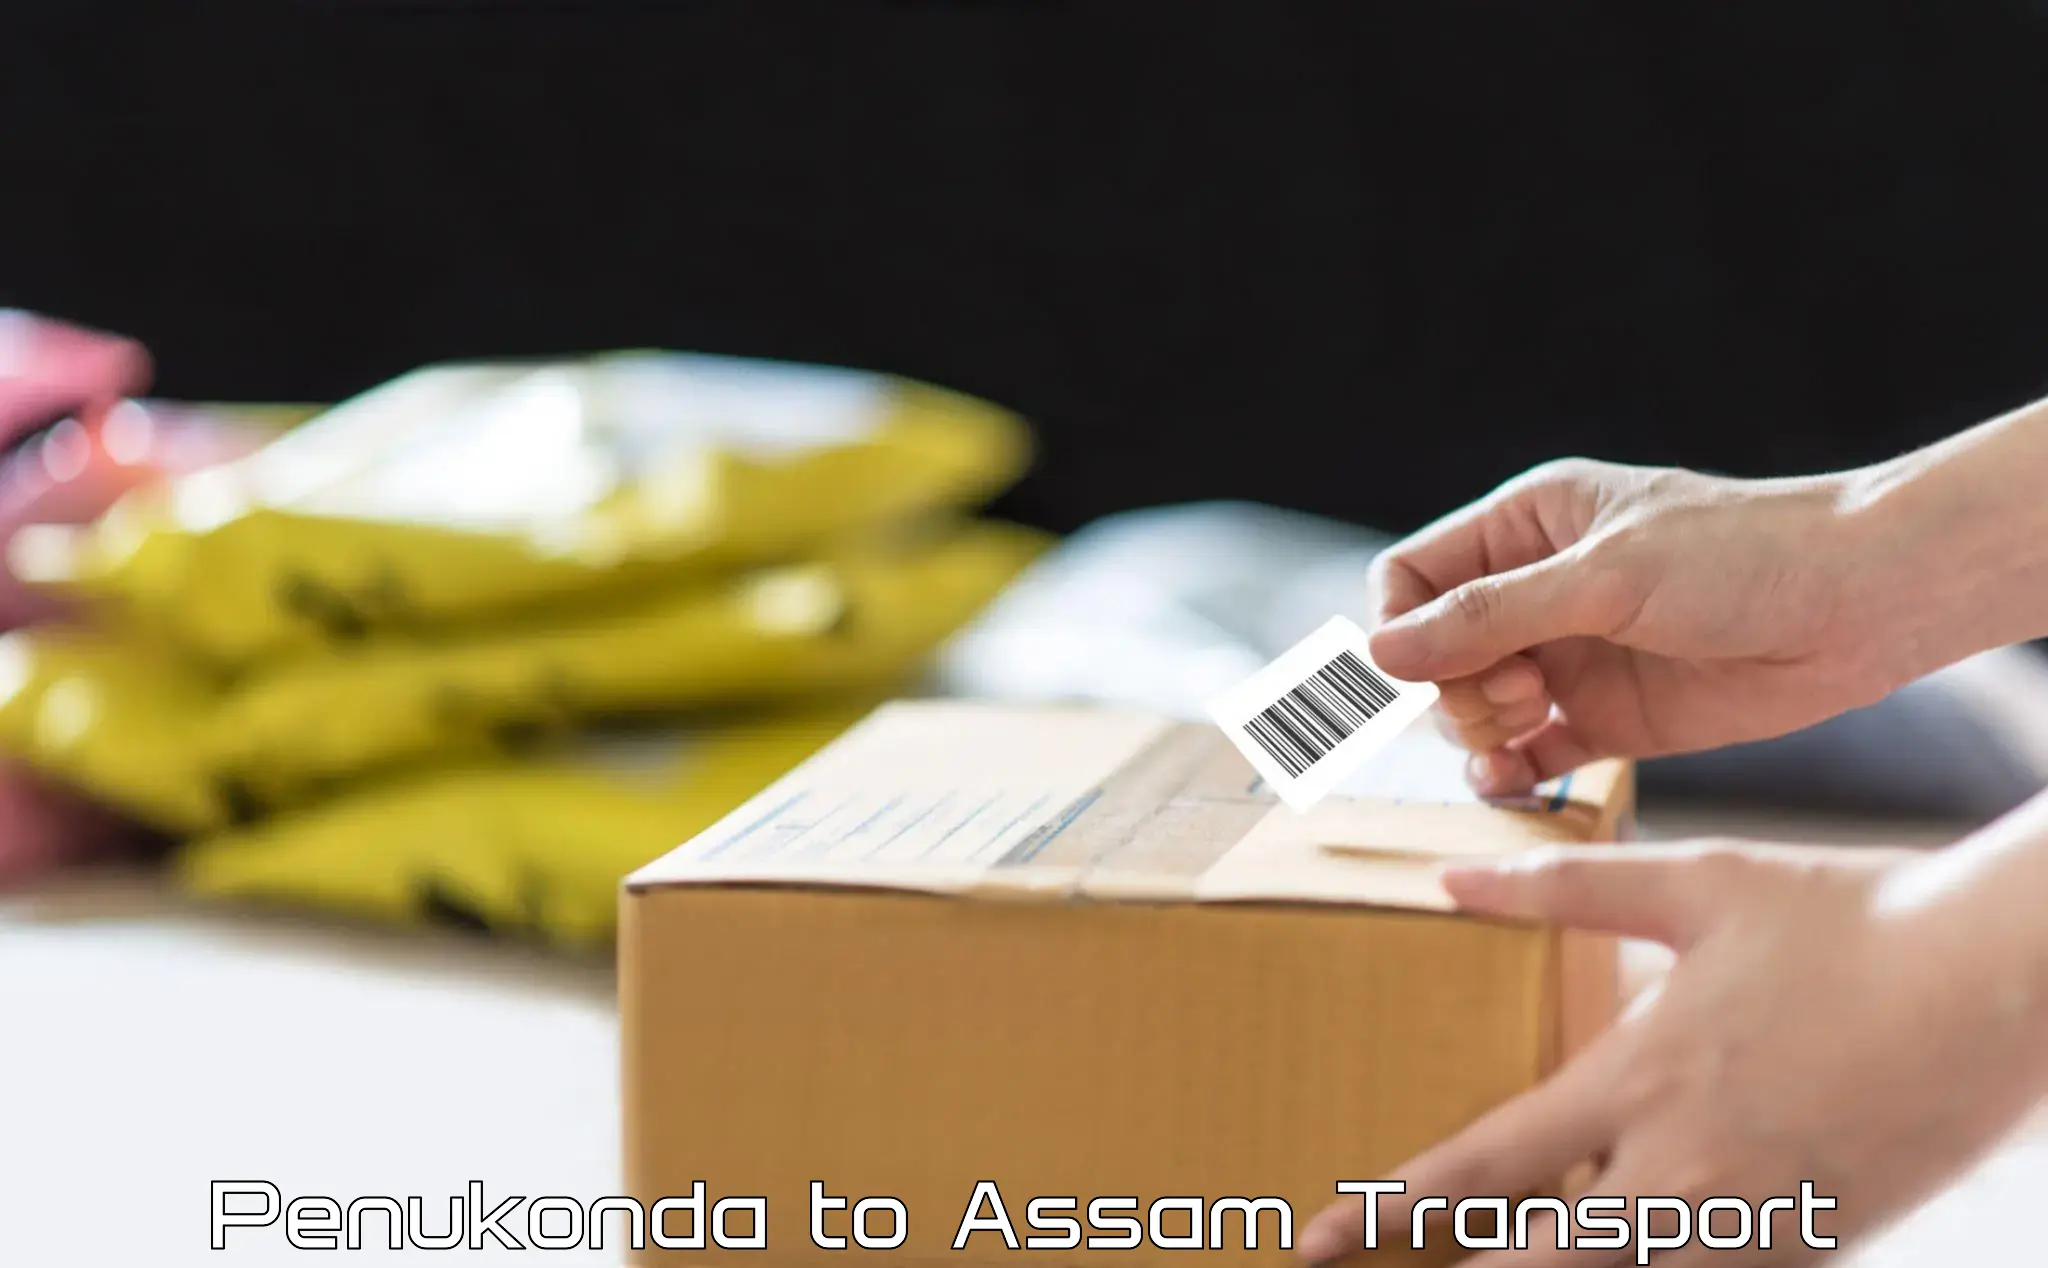 Transportation solution services Penukonda to Lala Assam